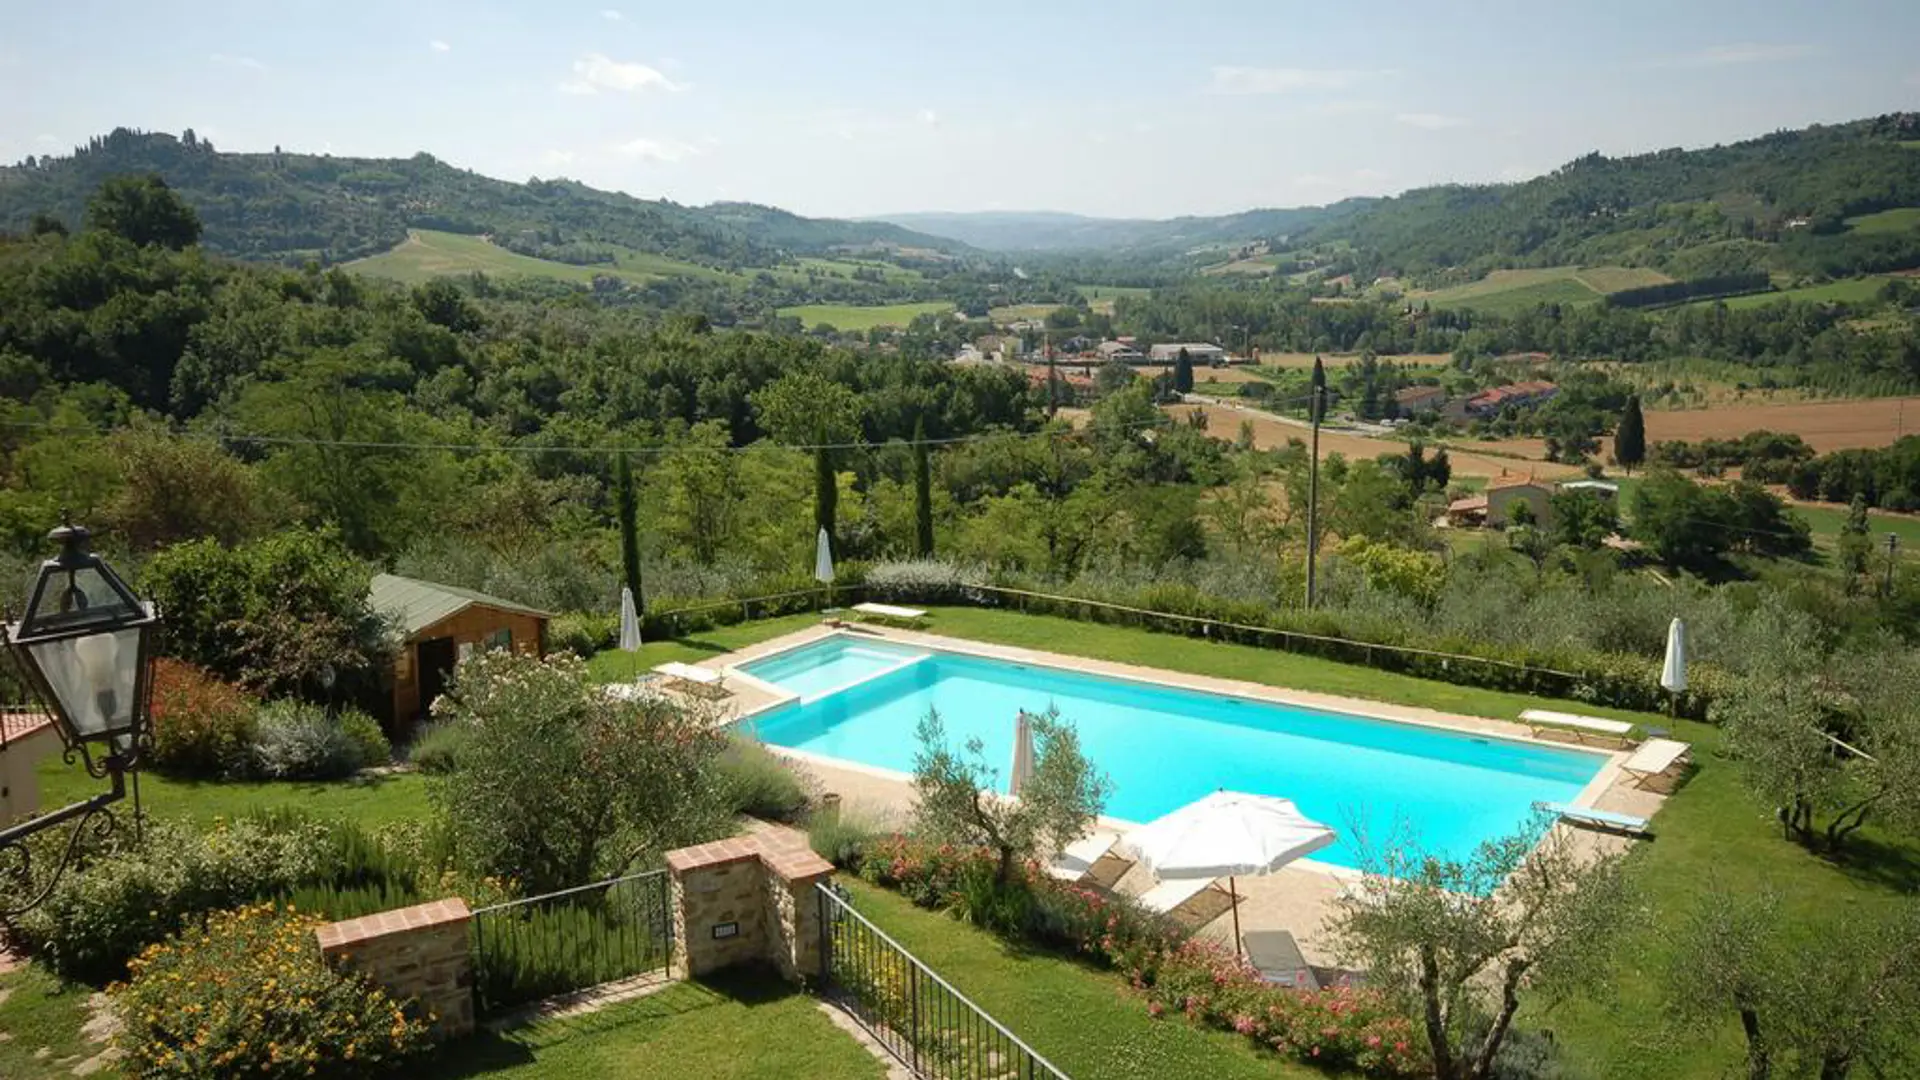 Ditt hotell i Toscana har den vackraste poolen med utsikt.